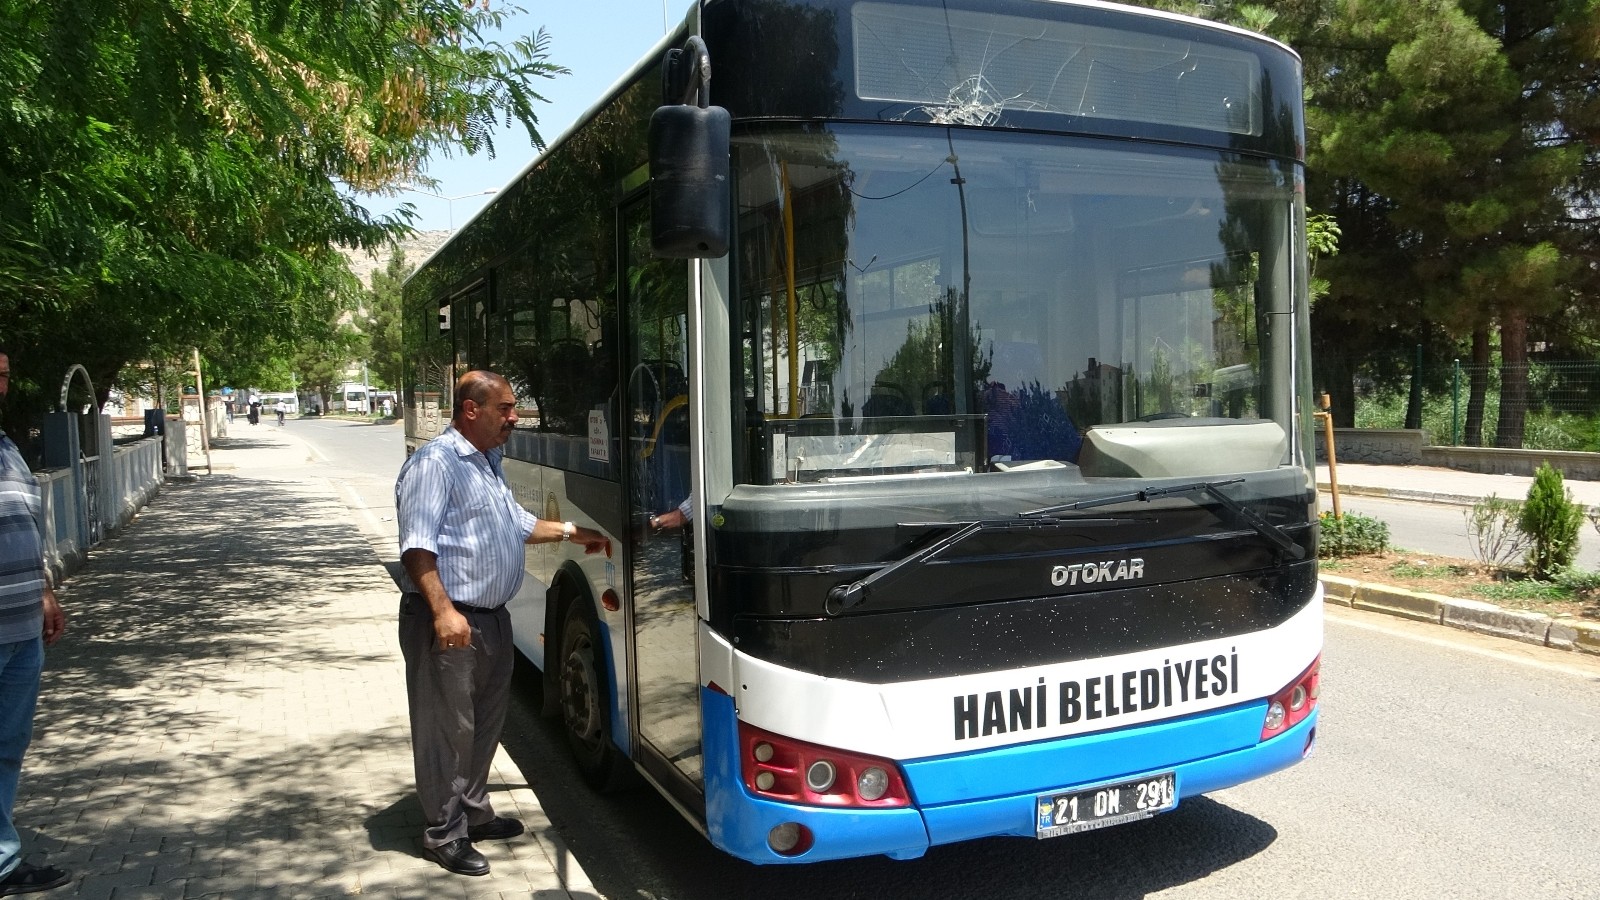 Hani’de ücretsiz otobüs seferleri başladı